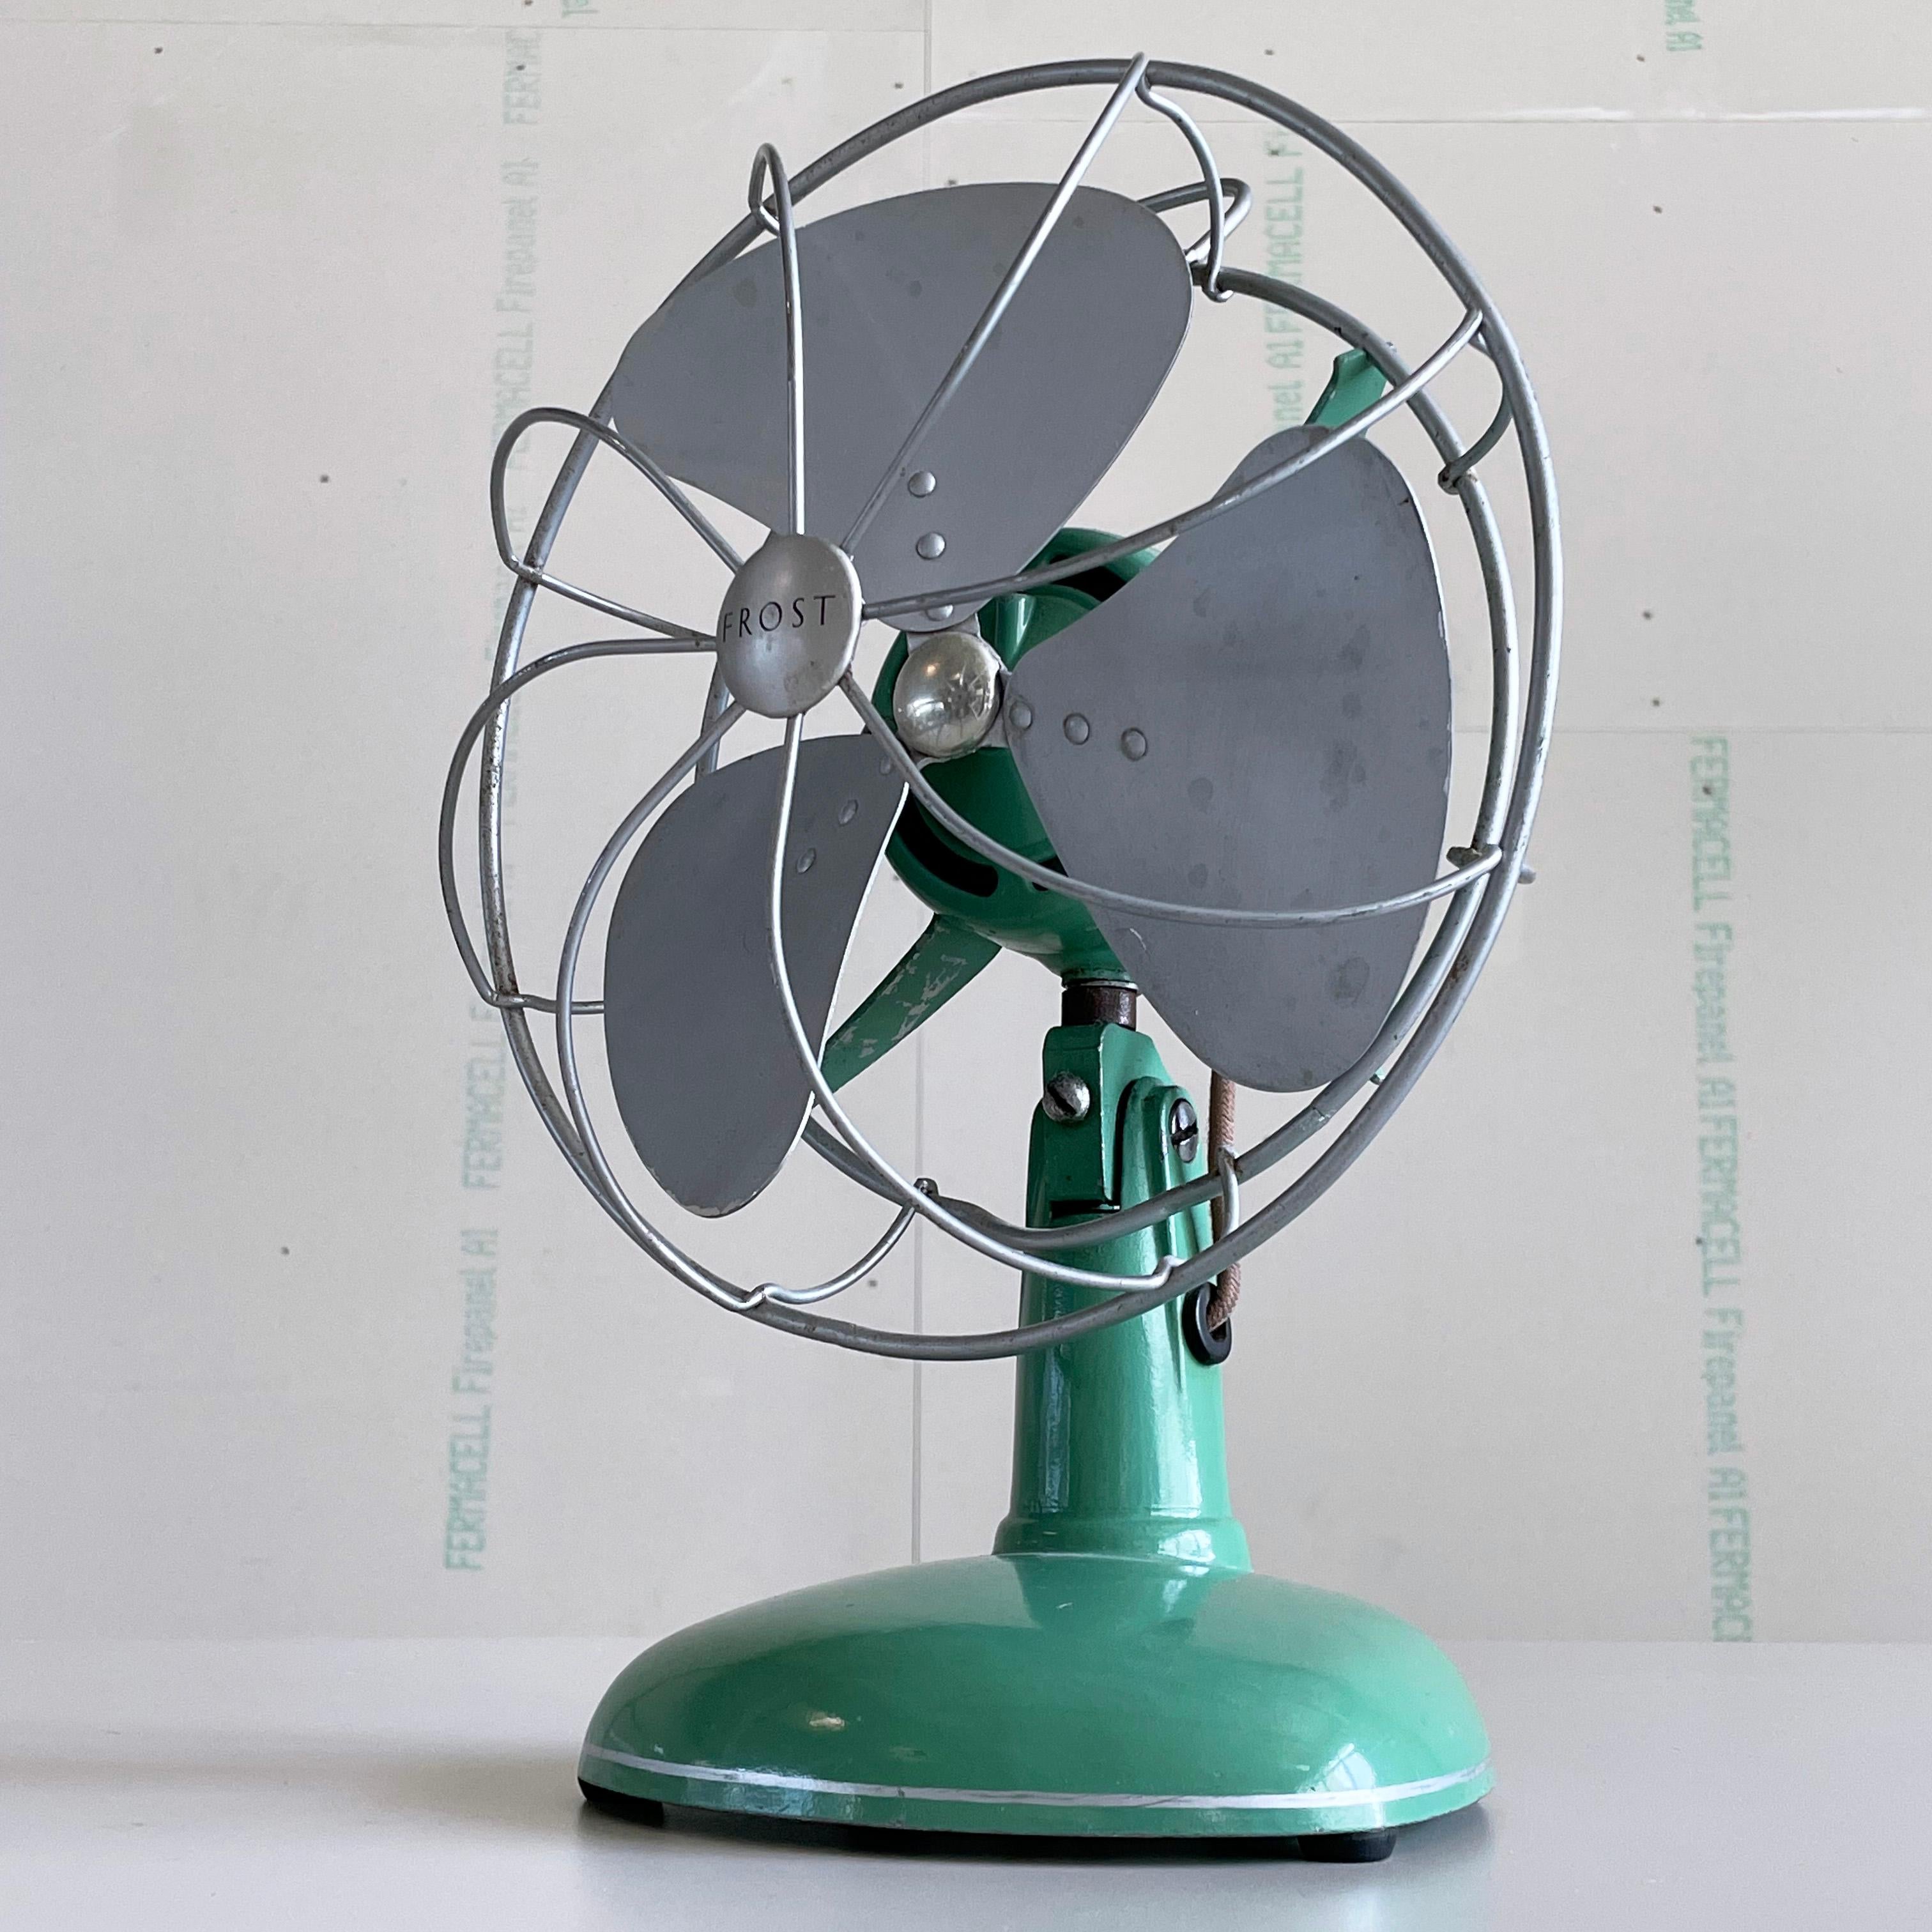 1950’s FROST triple blade oscillating desk fan / ventilator For Sale 1